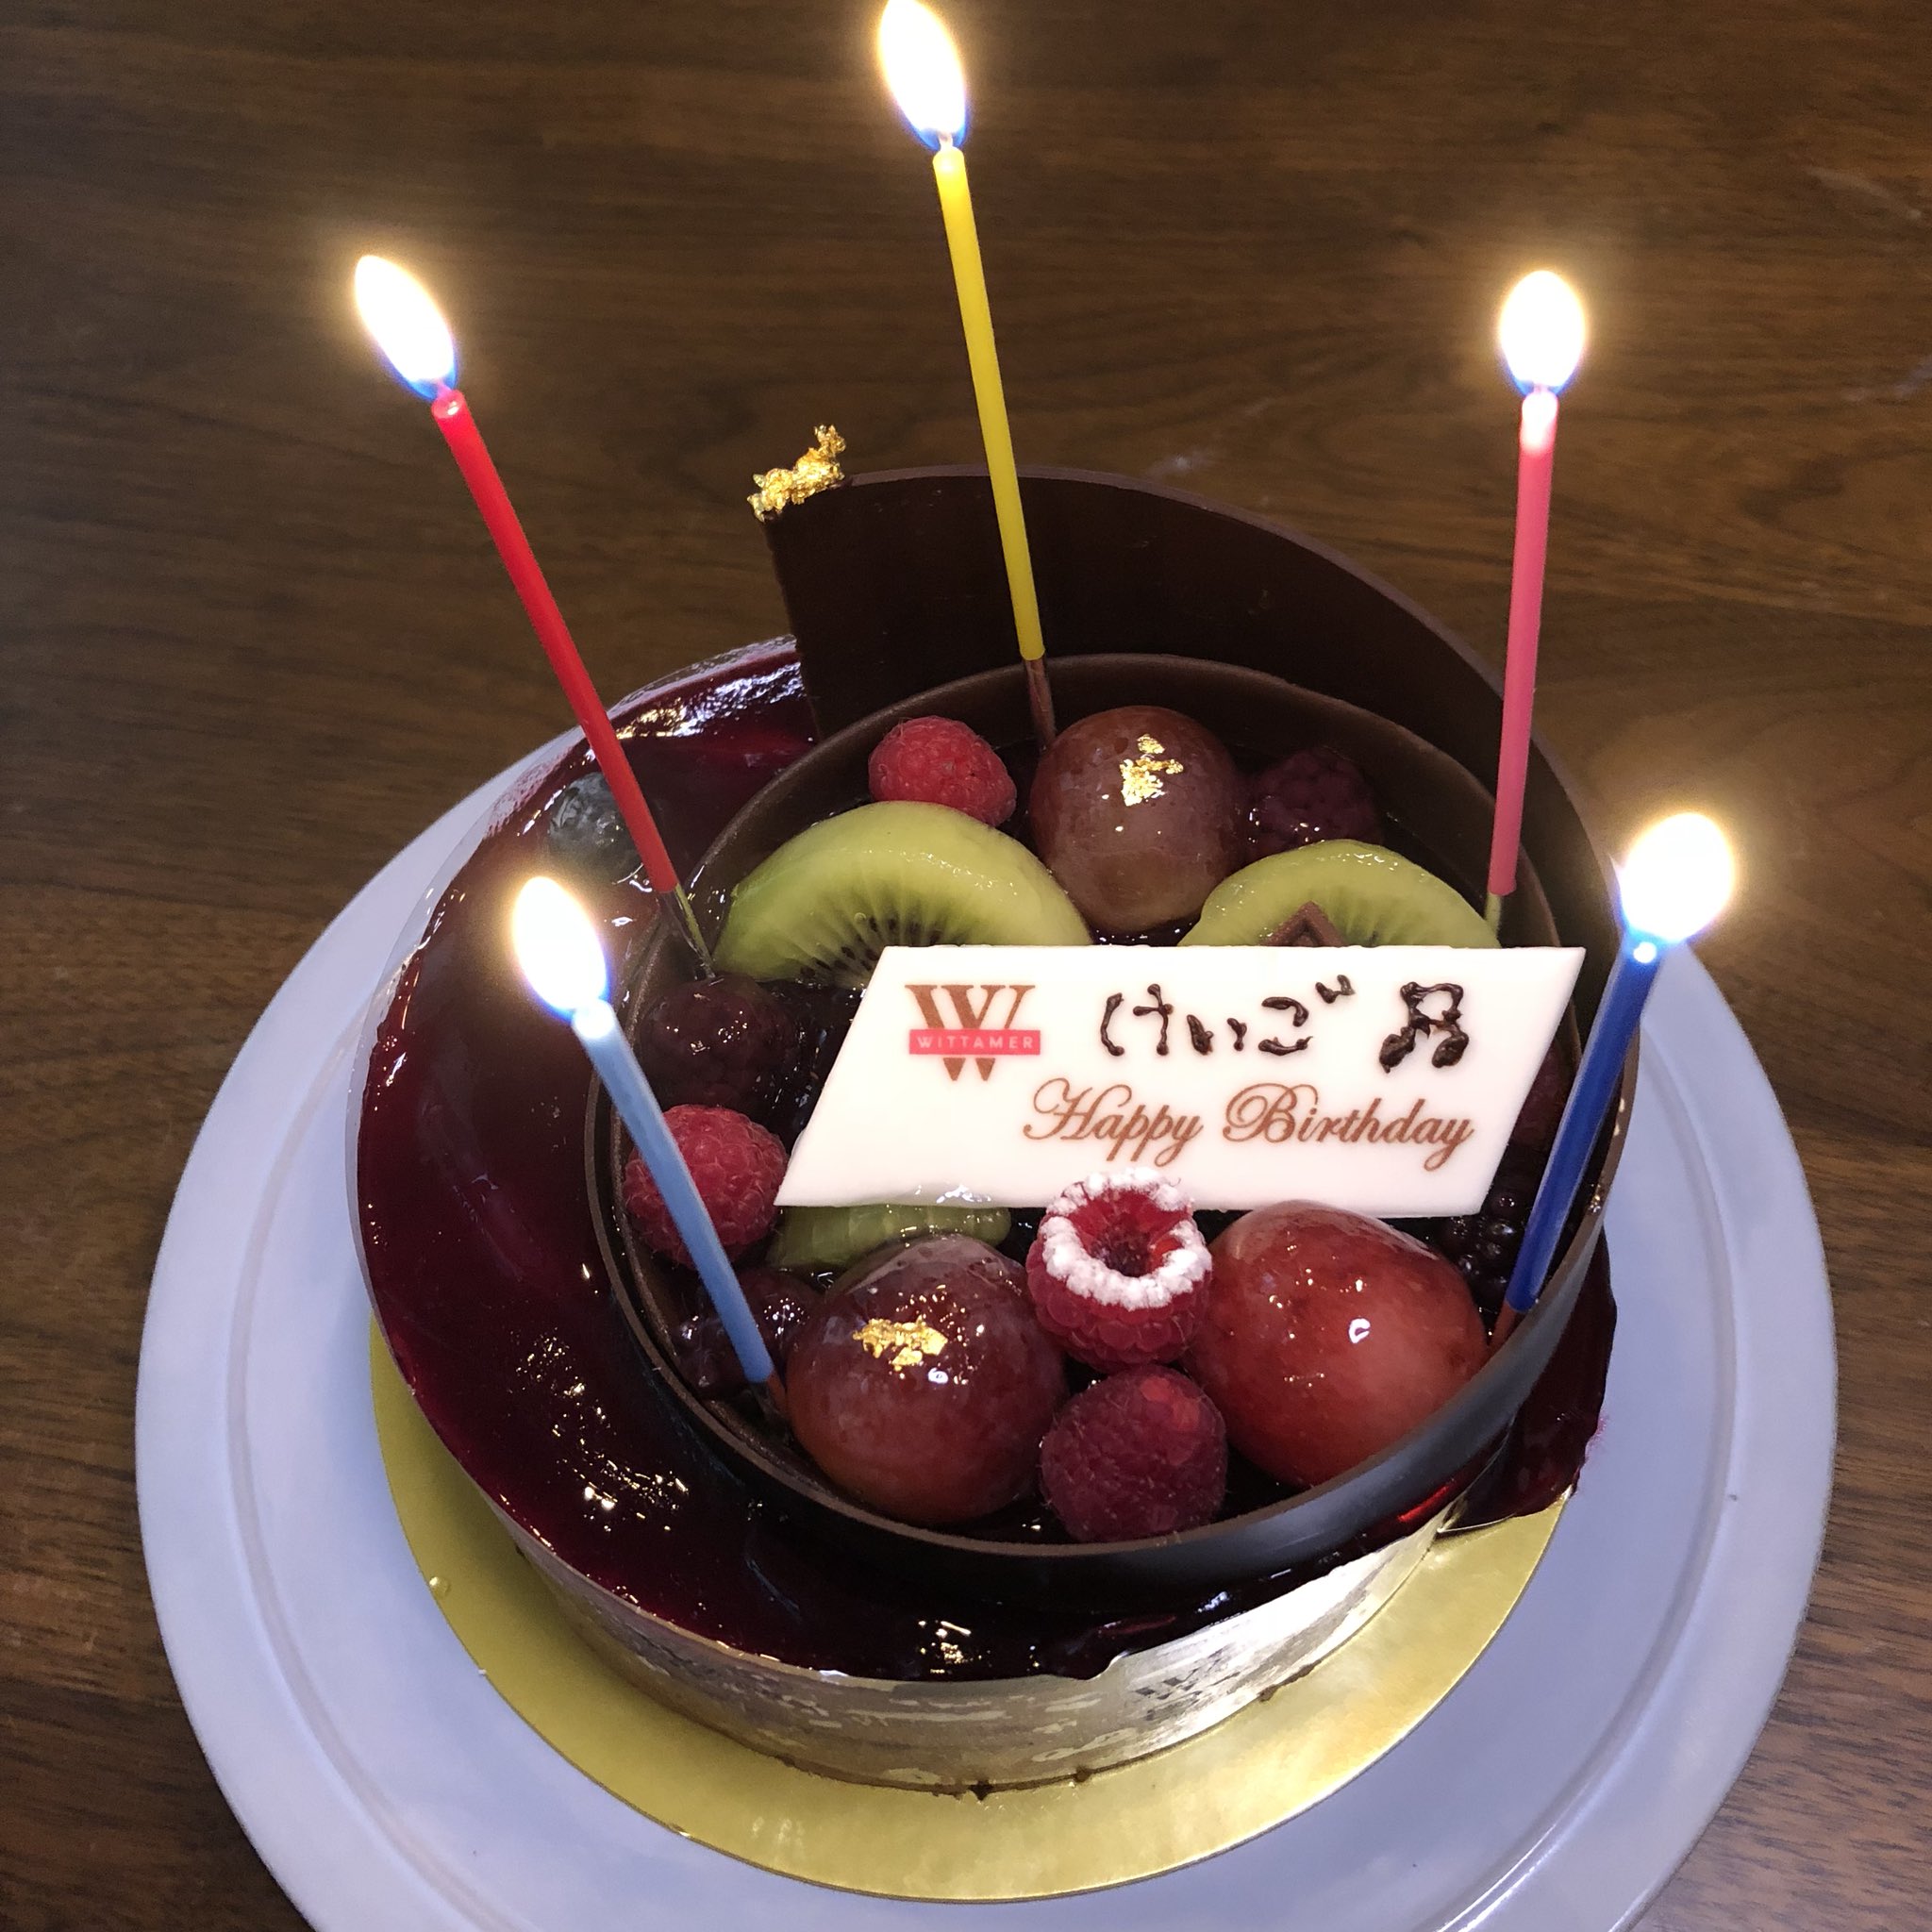 しげとし 今日は彼氏さんの誕生日なんでヴィタメールでカシスのケーキでお祝い また1つオジサンにならはった T Co Veo91umemn Twitter